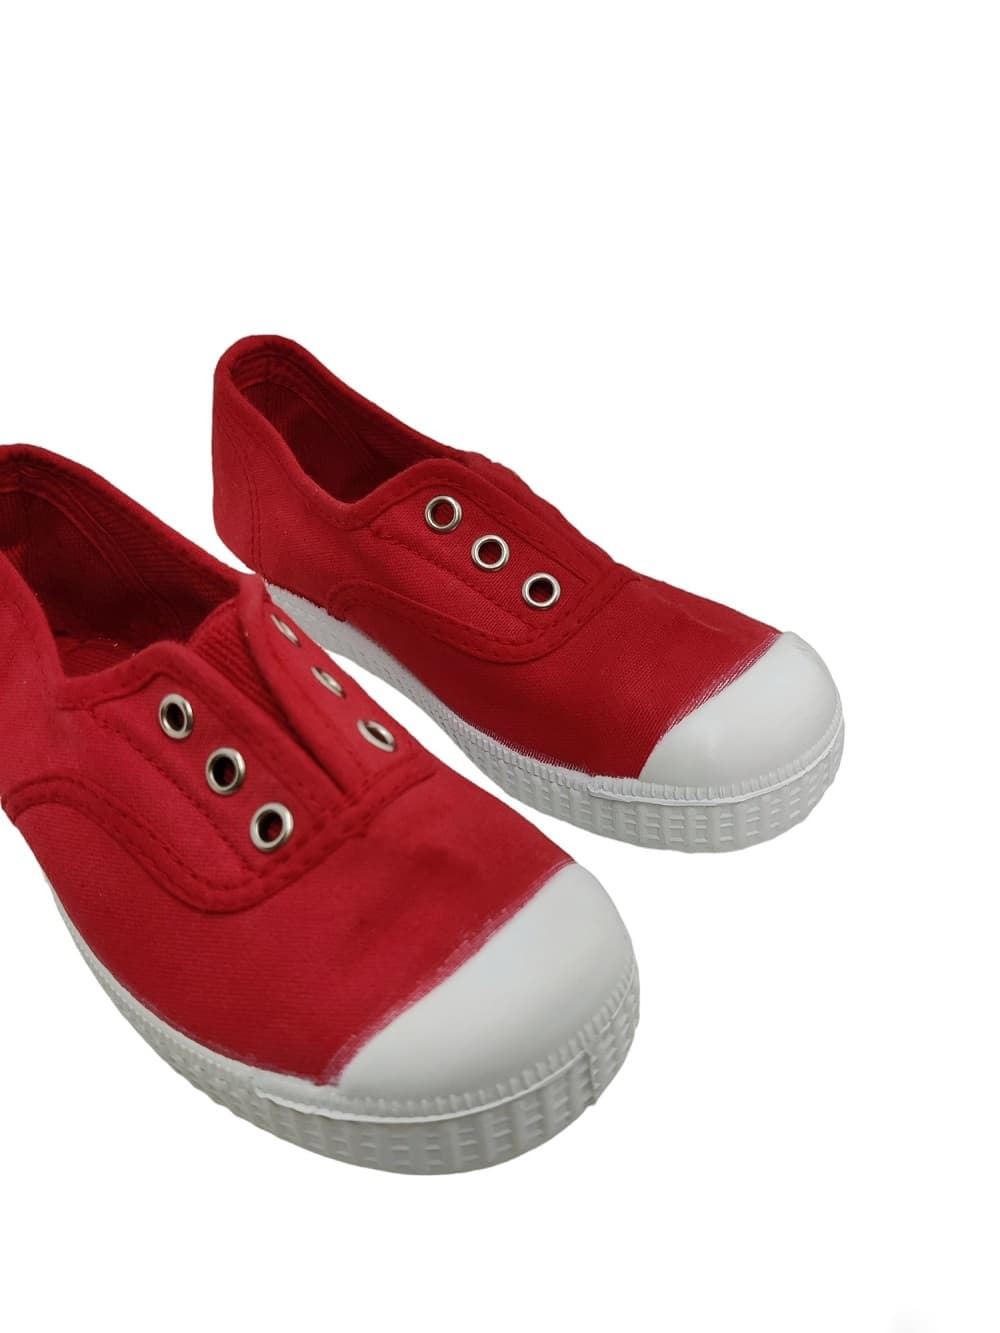 La Cadena Zapatillas niños Lona Rojo con Puntera - Imagen 4